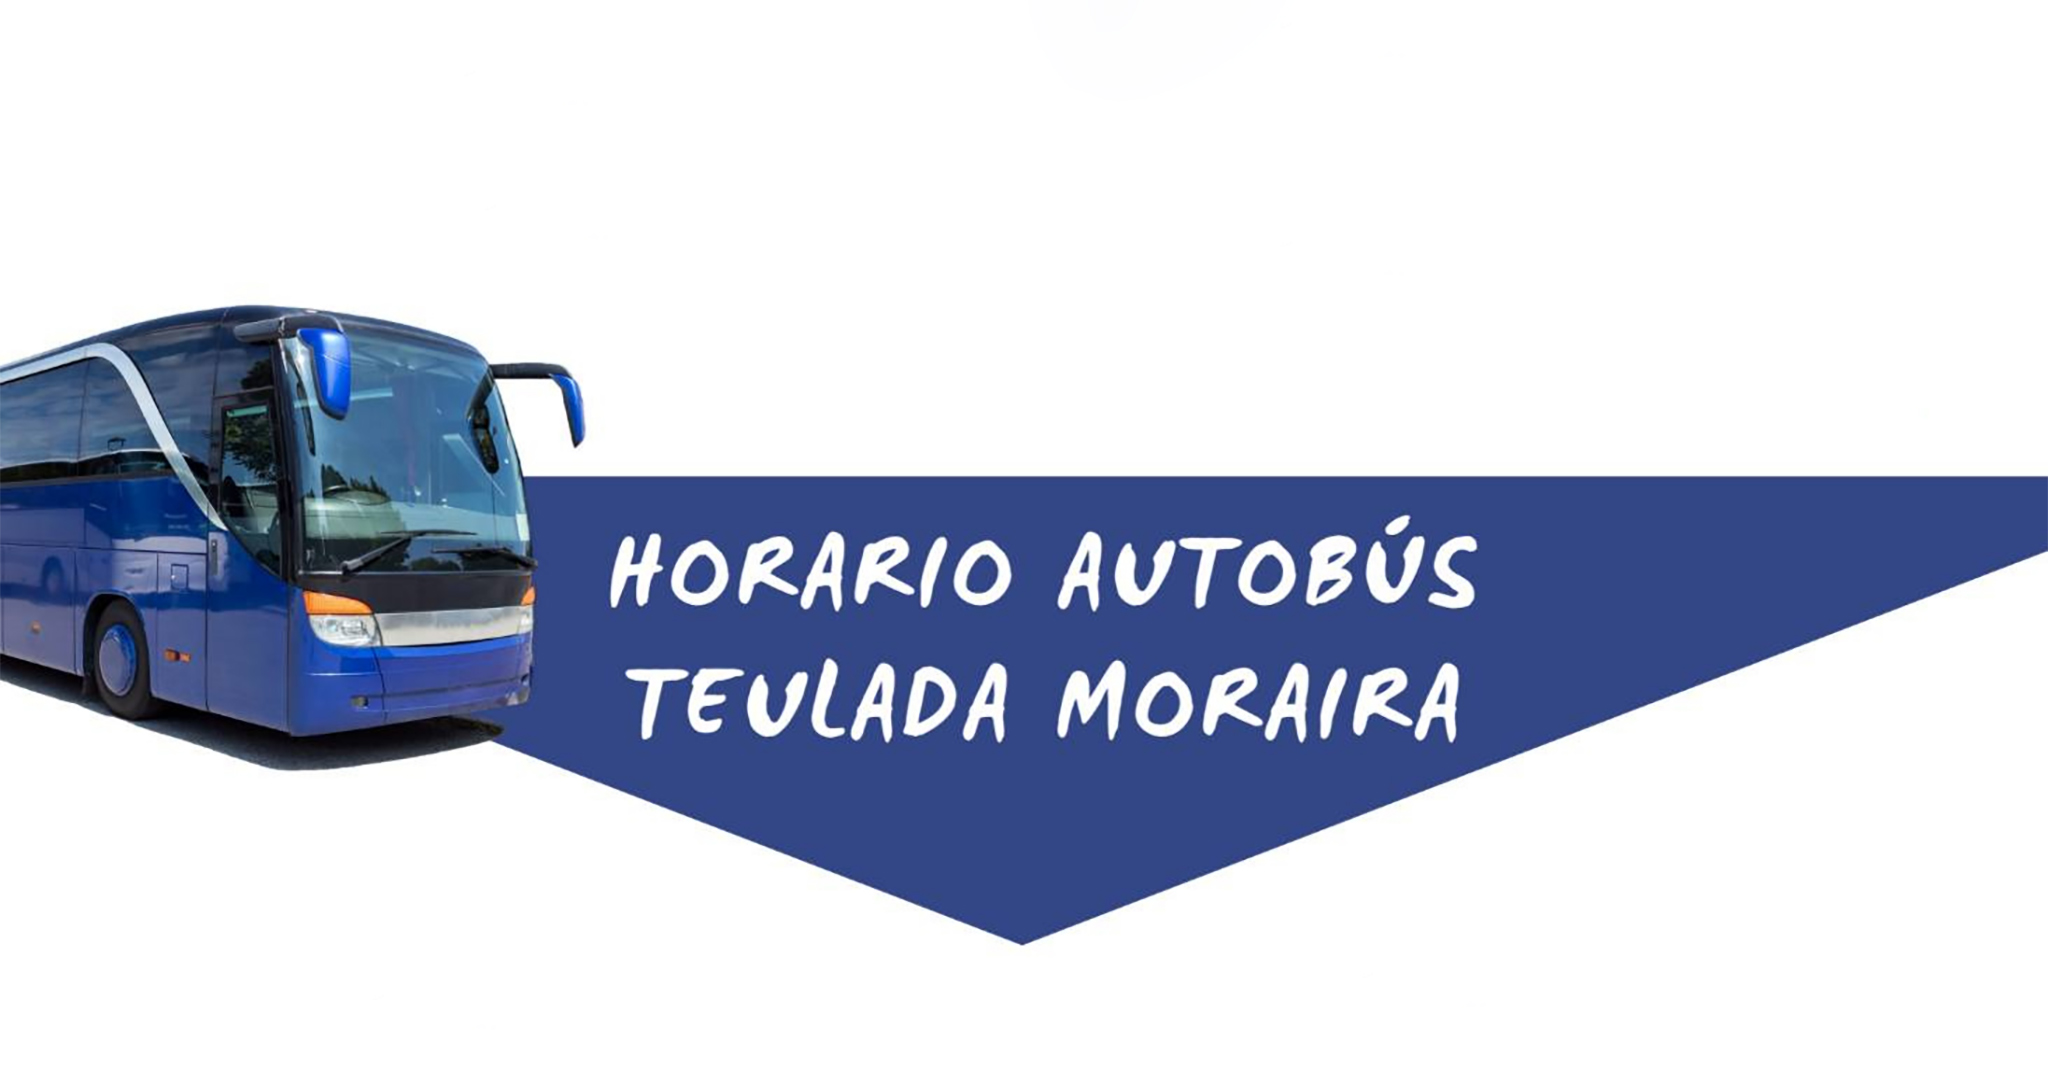 Autobús de verano de Teulada Moraira